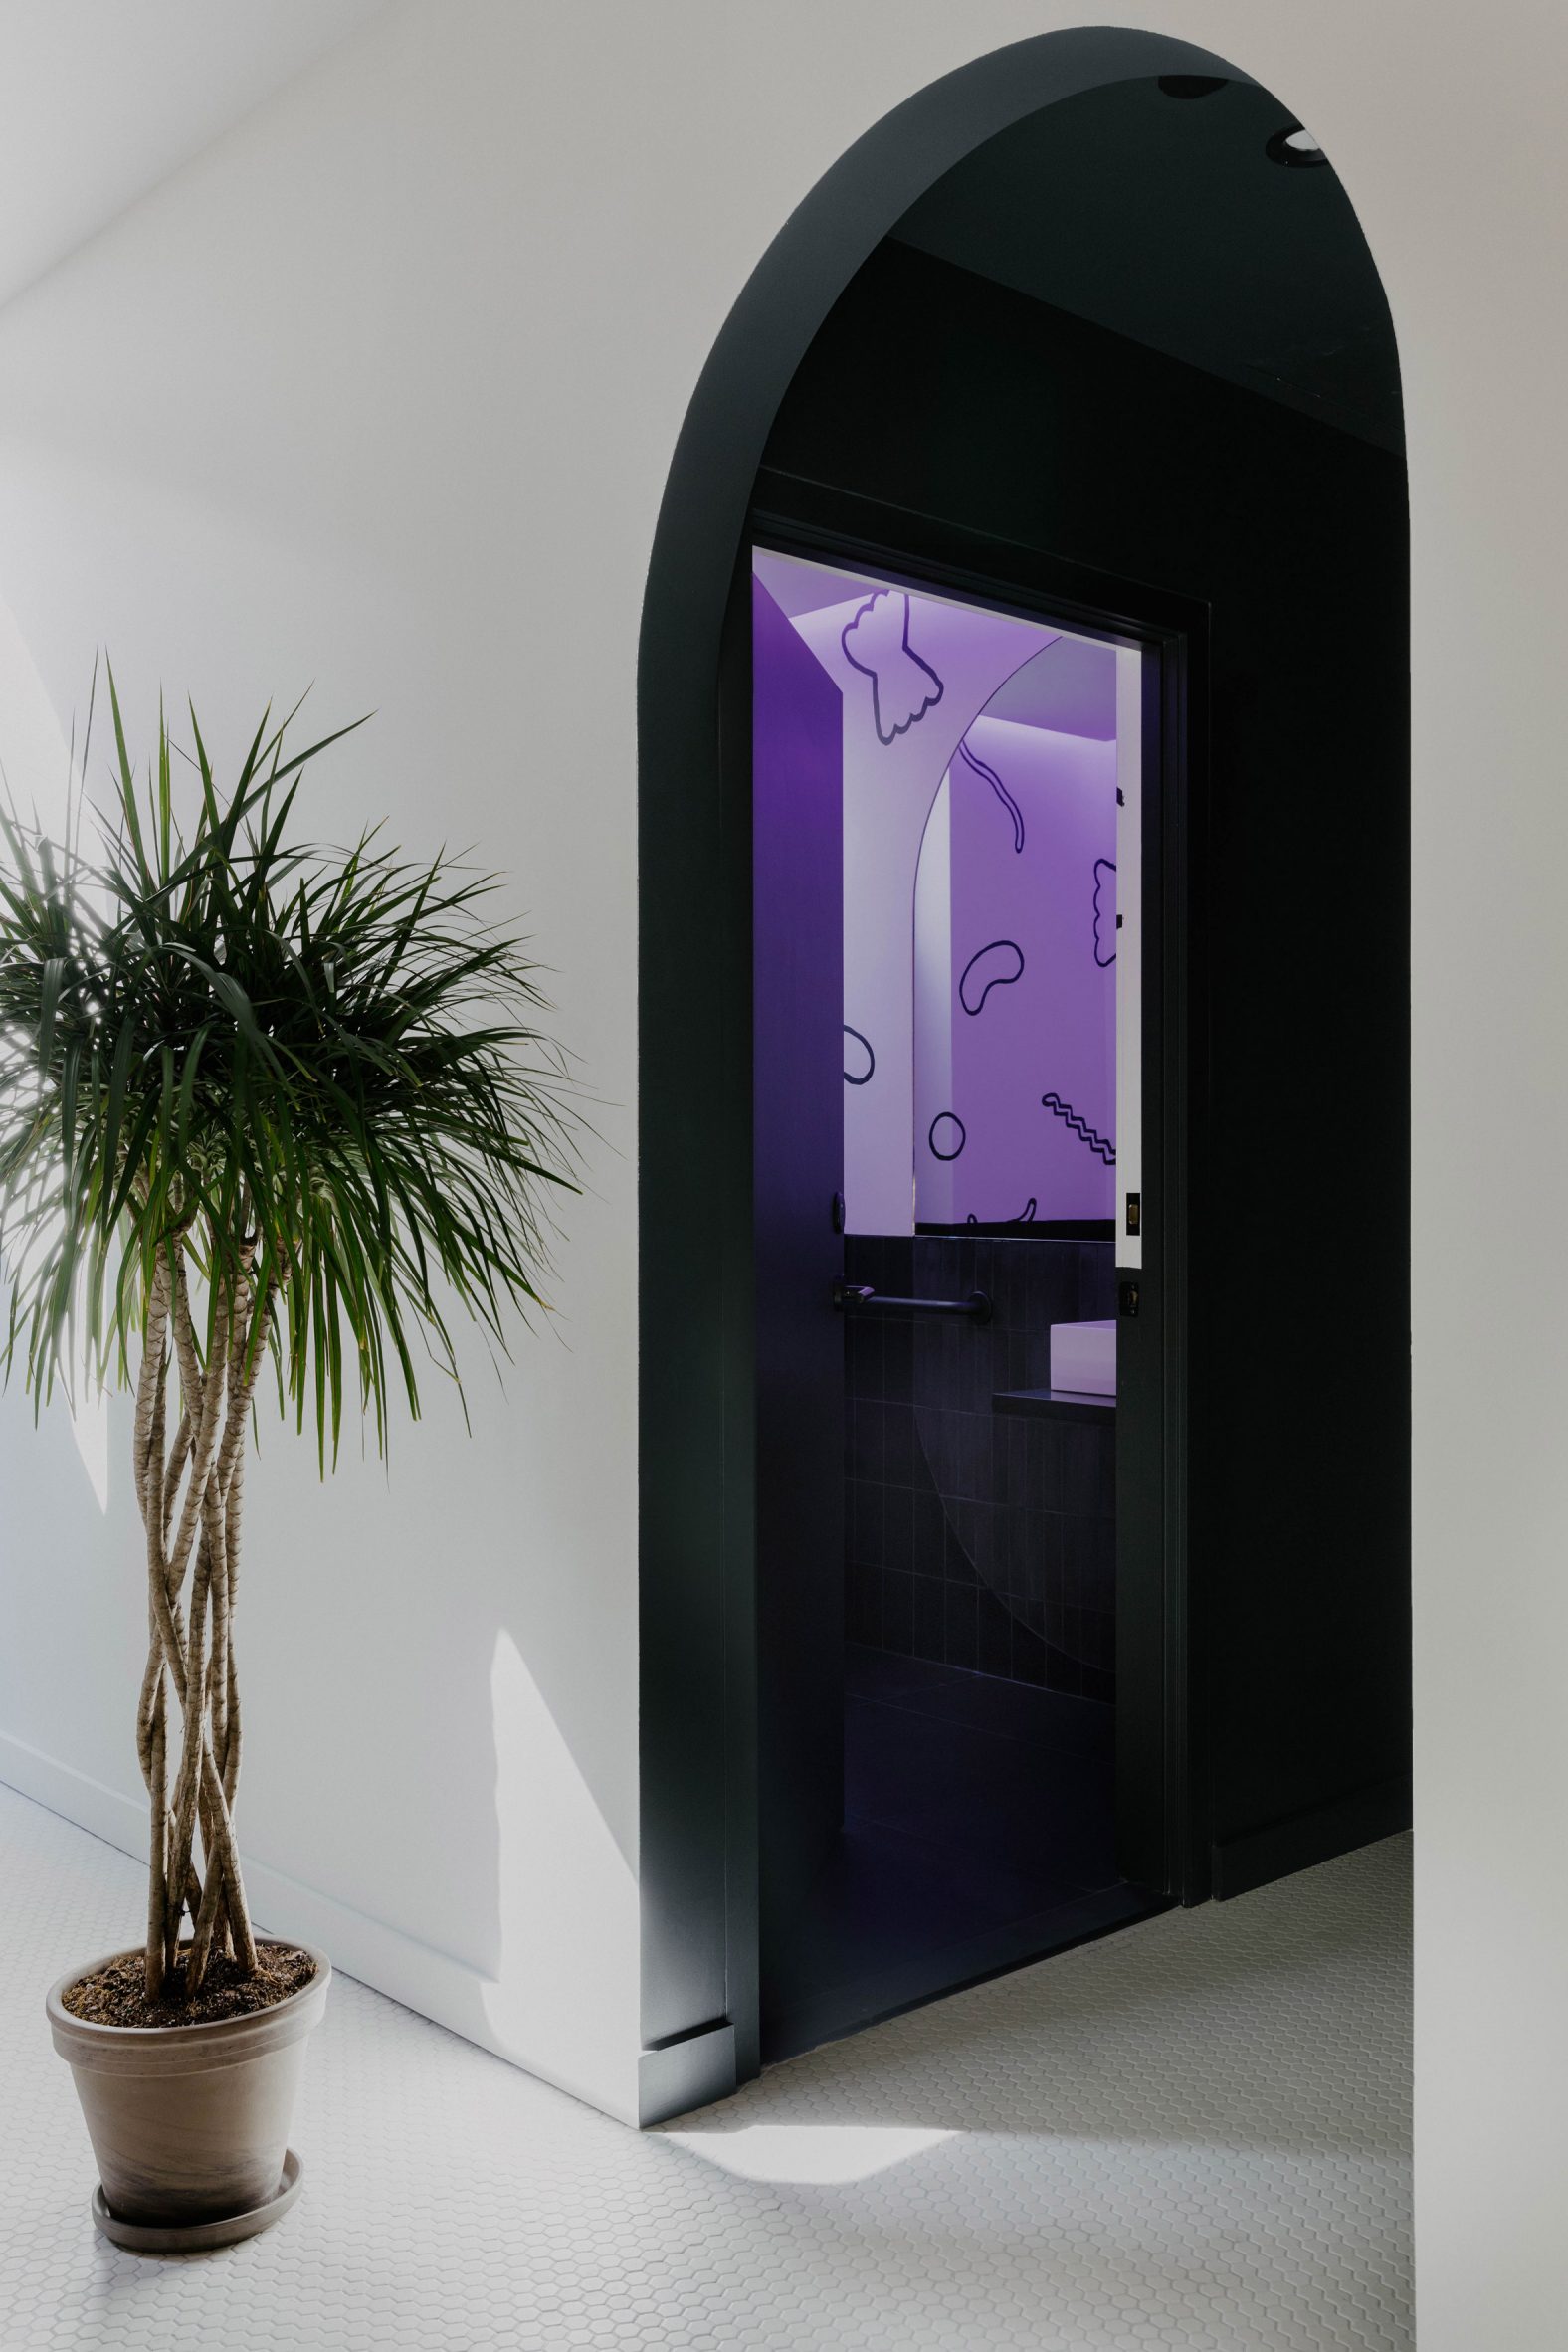 View through black archway into purple-hued bathroom